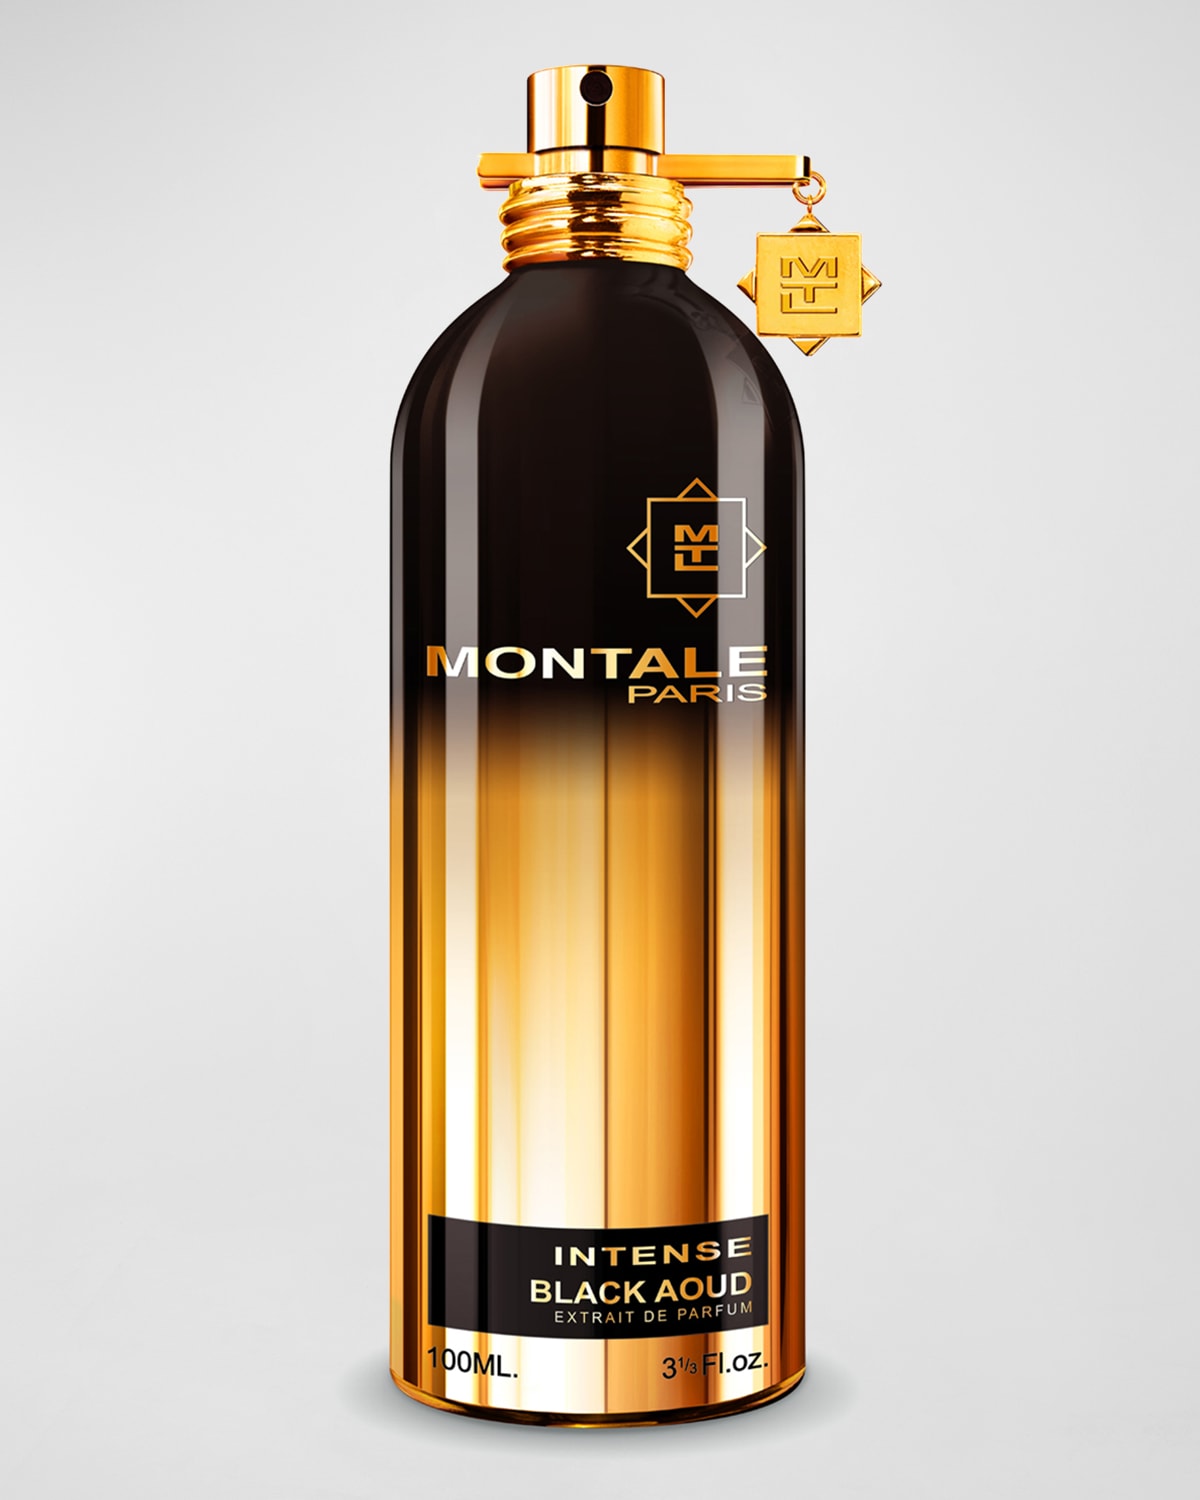 Intense Black Aoud Extrait de Parfum, 3.4 oz.